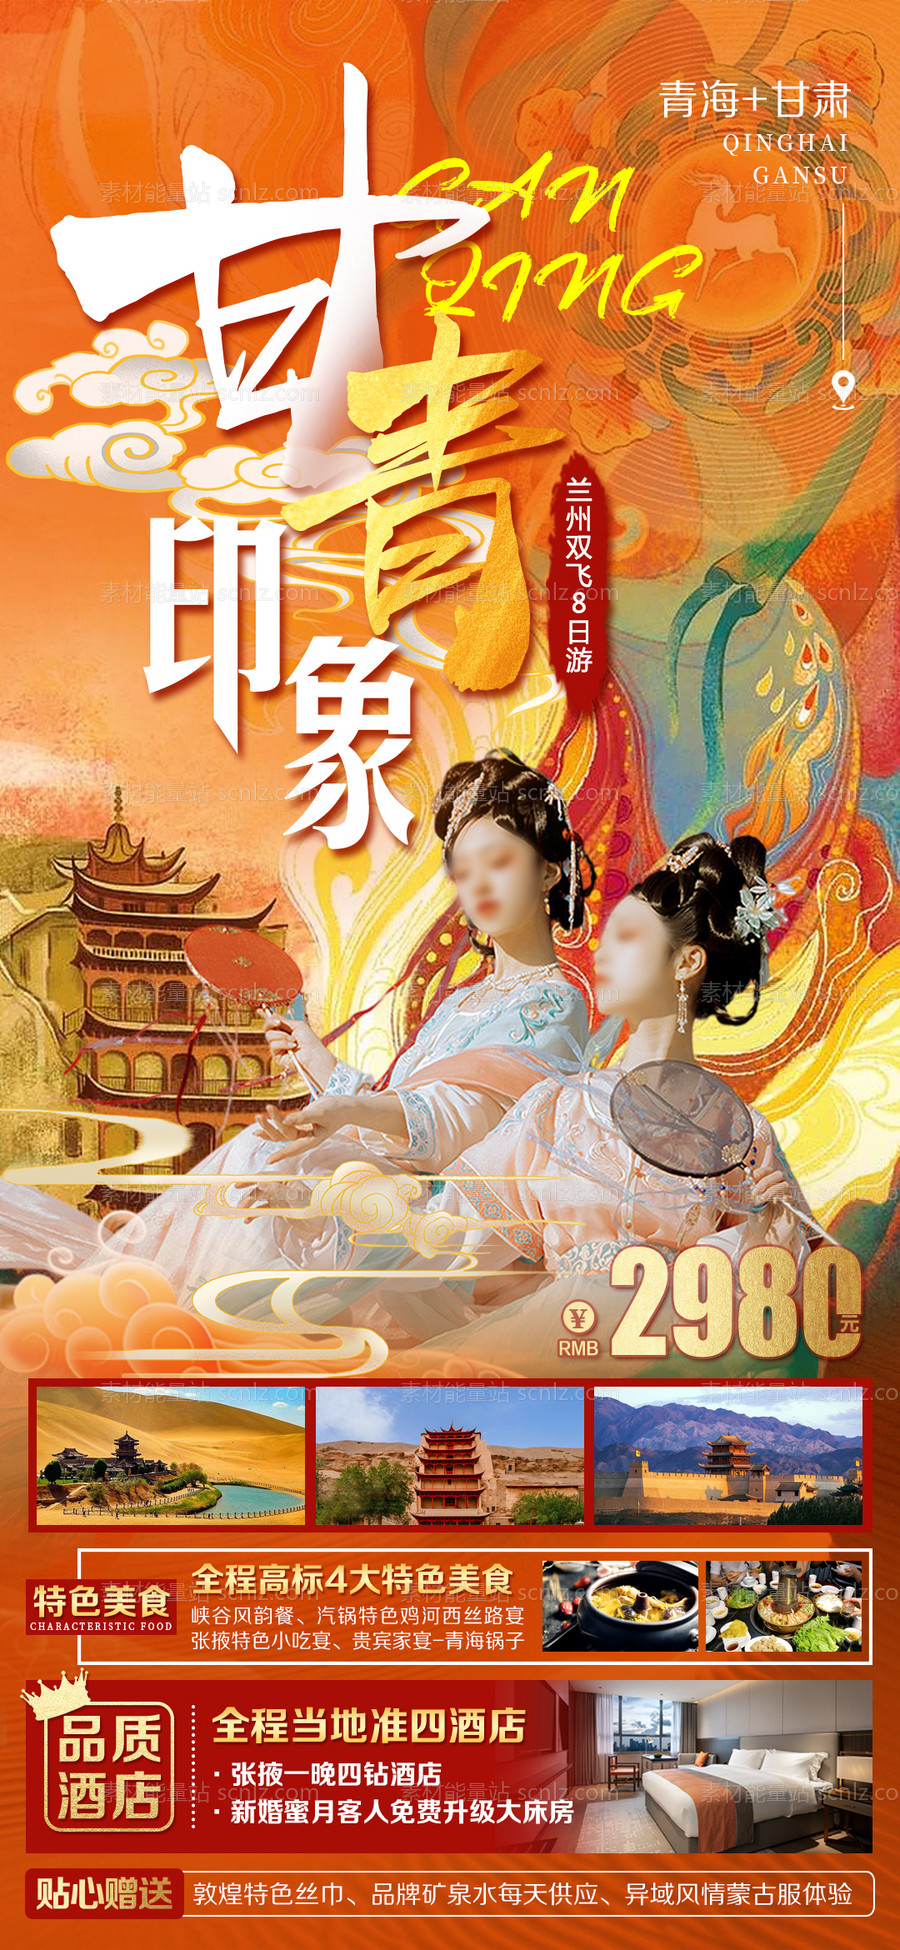 素材能量站-甘青旅游海报